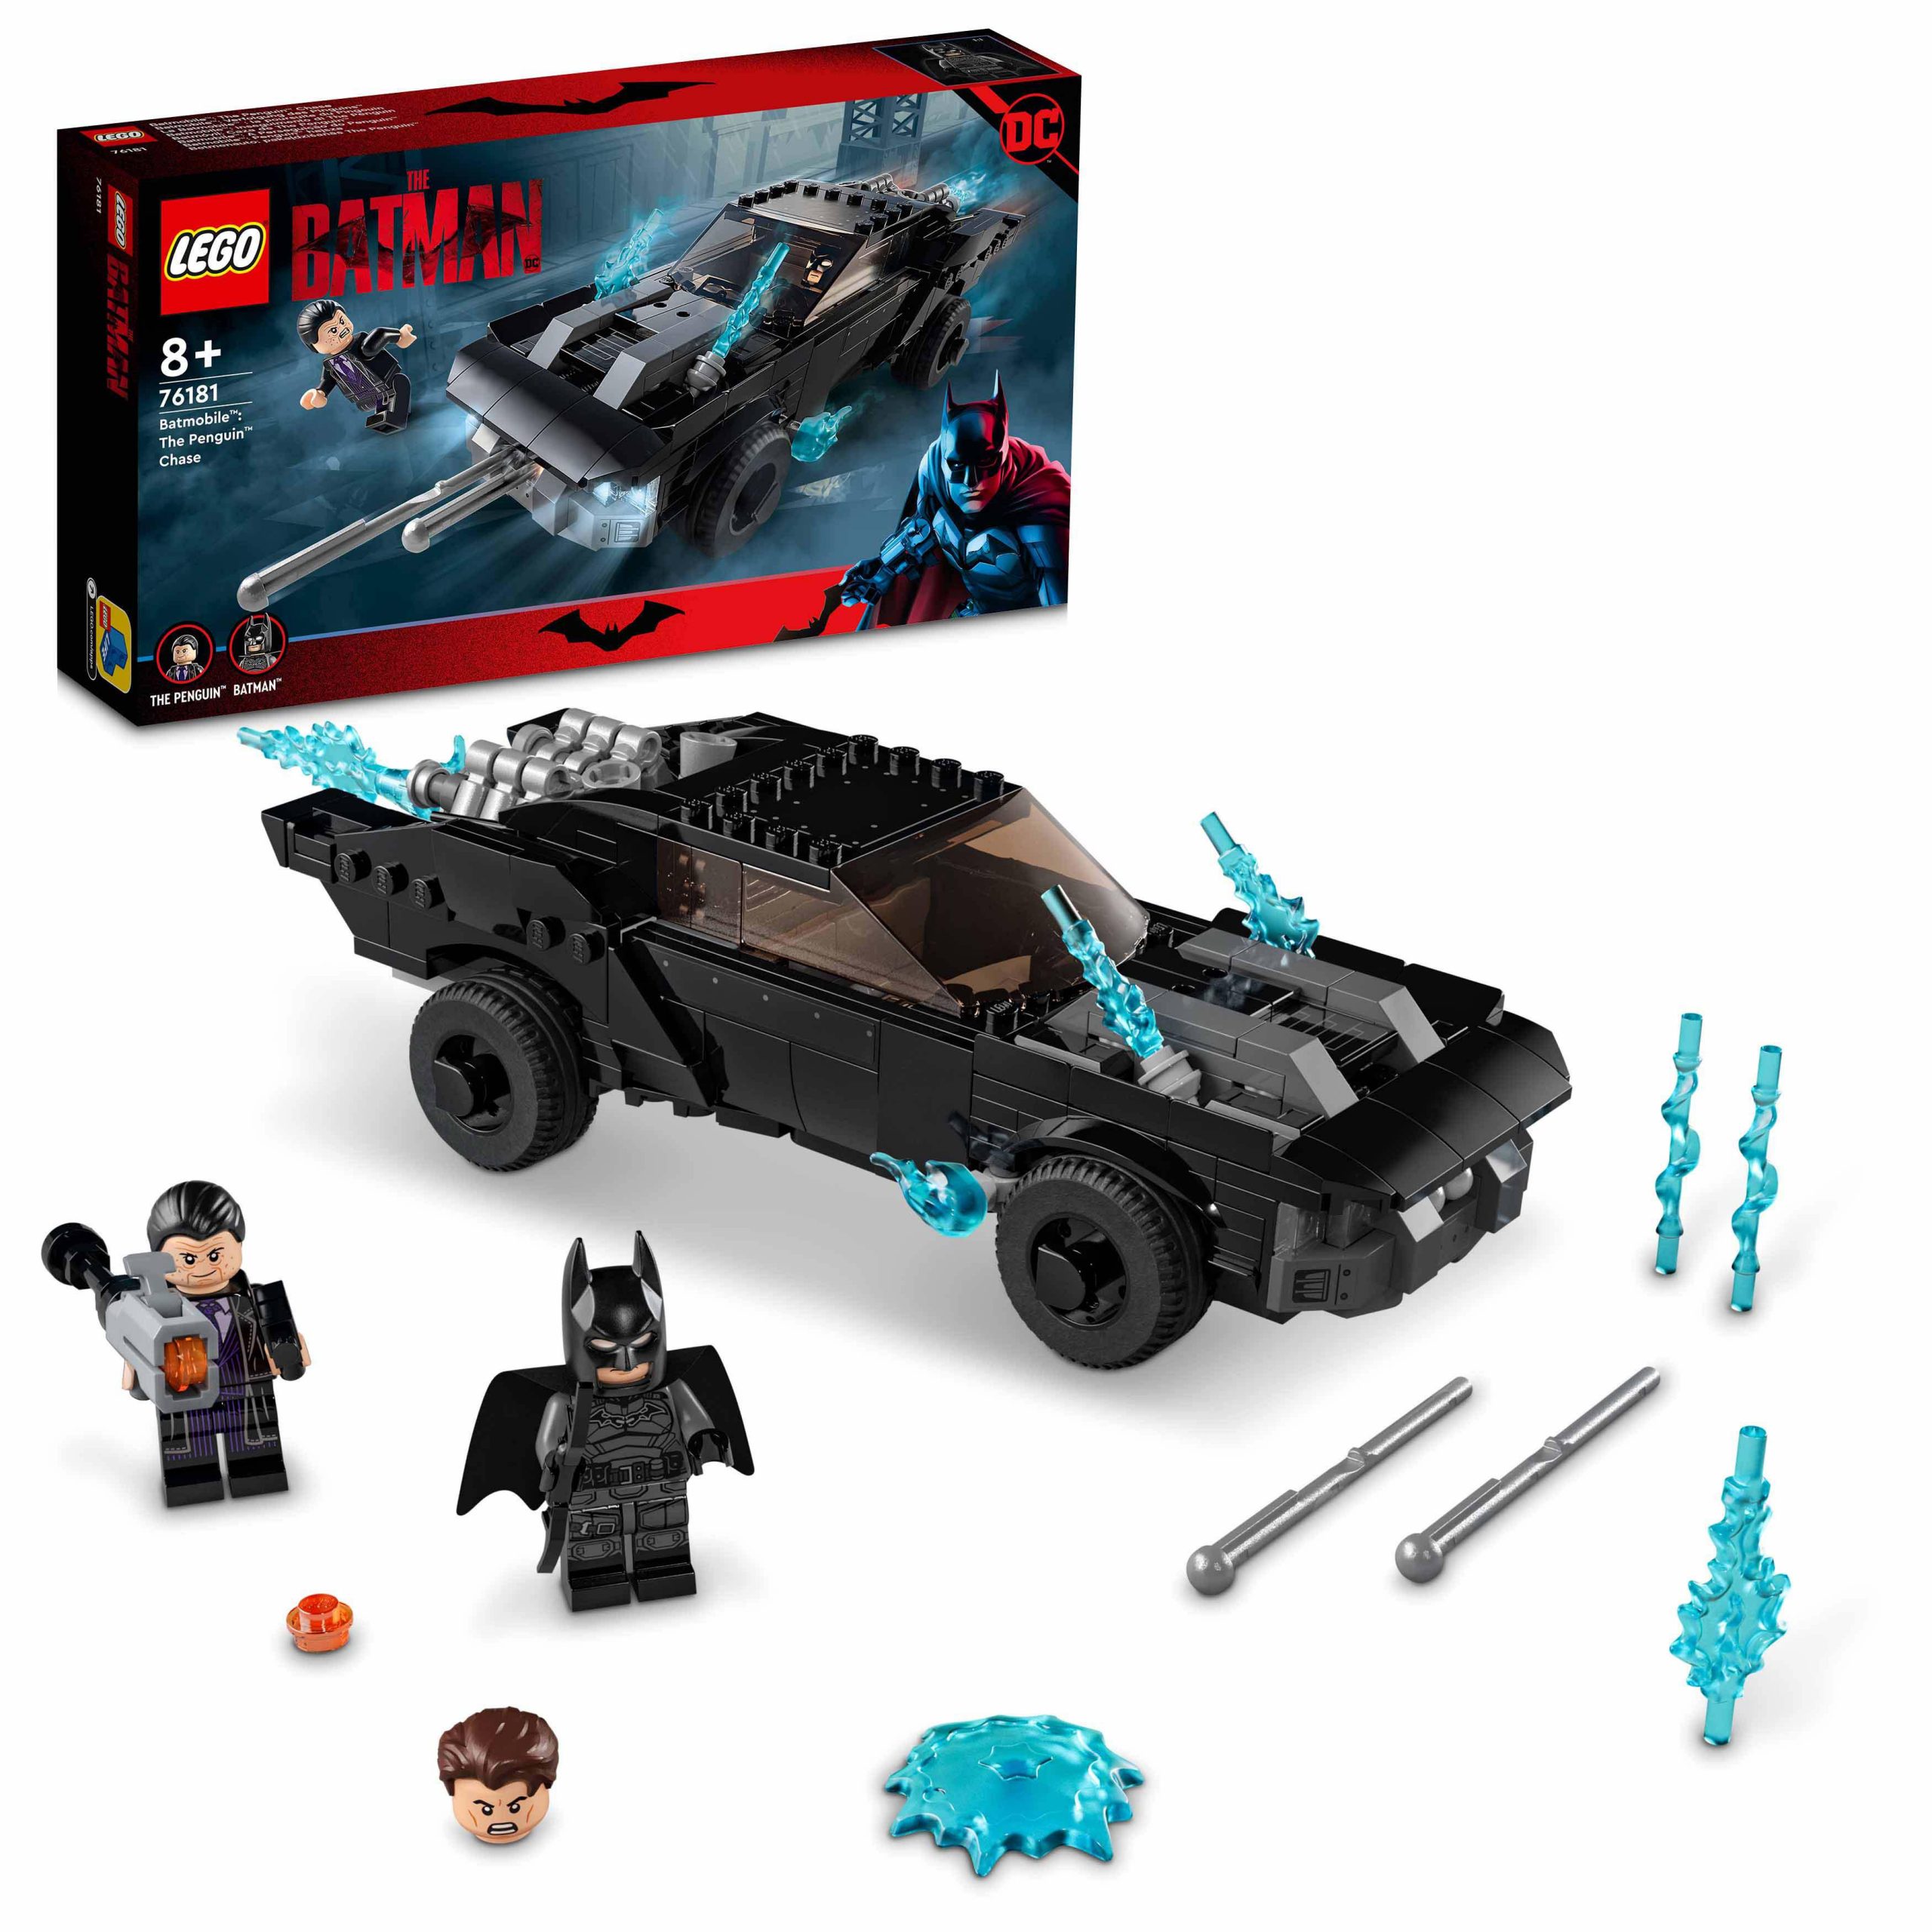 Lego dc batman batmobile: inseguimento di the penguin, macchina giocattolo  super heroes per bambini dagli 8 anni, 76181 - Toys Center